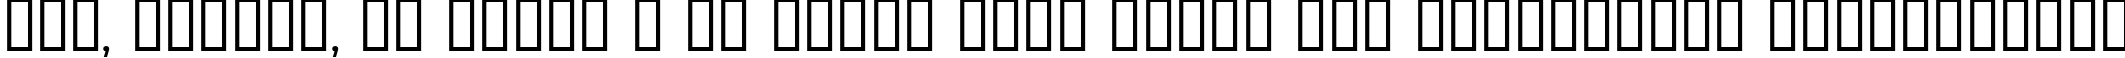 Пример написания шрифтом Aquaduct    Plain текста на украинском